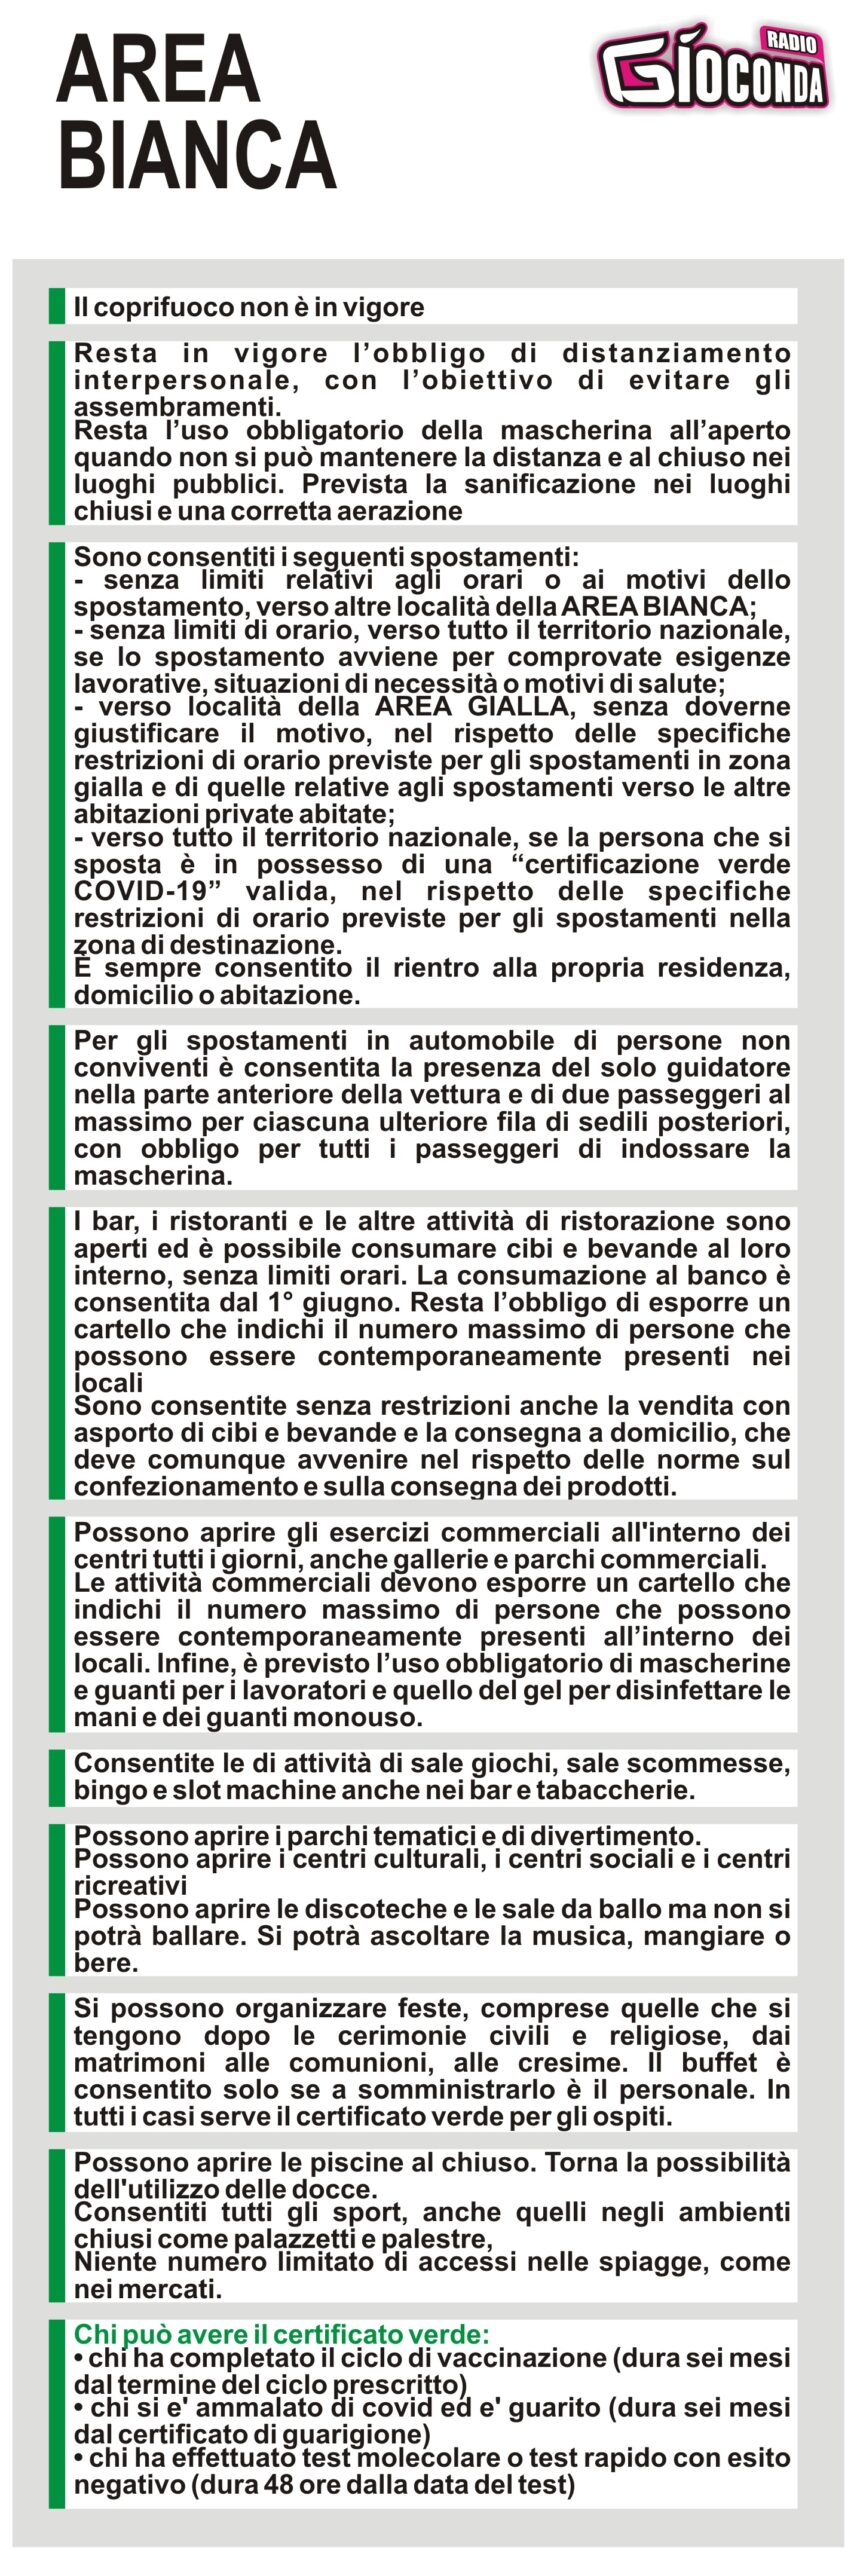 Il Friuli Venezia Giulia dal 31 maggio è in ZONA BIANCA #covid19 #covid #regionefriuliveneziagiulia